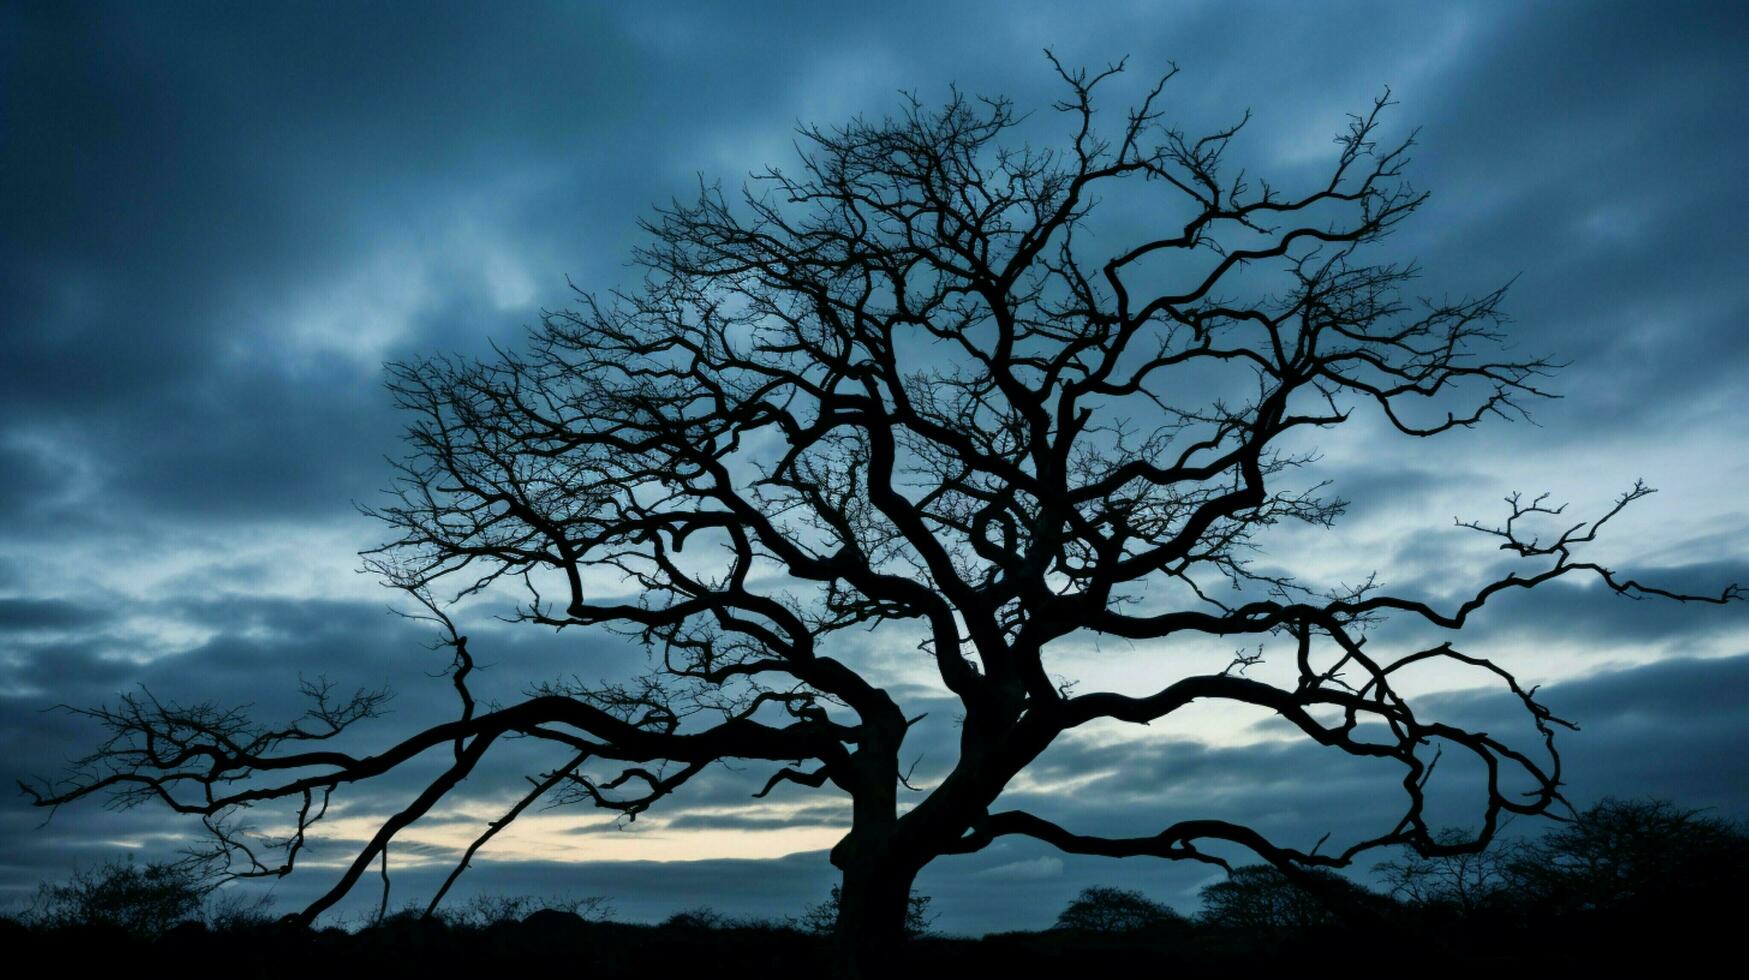 silhouet van boom tegen humeurig lucht foto